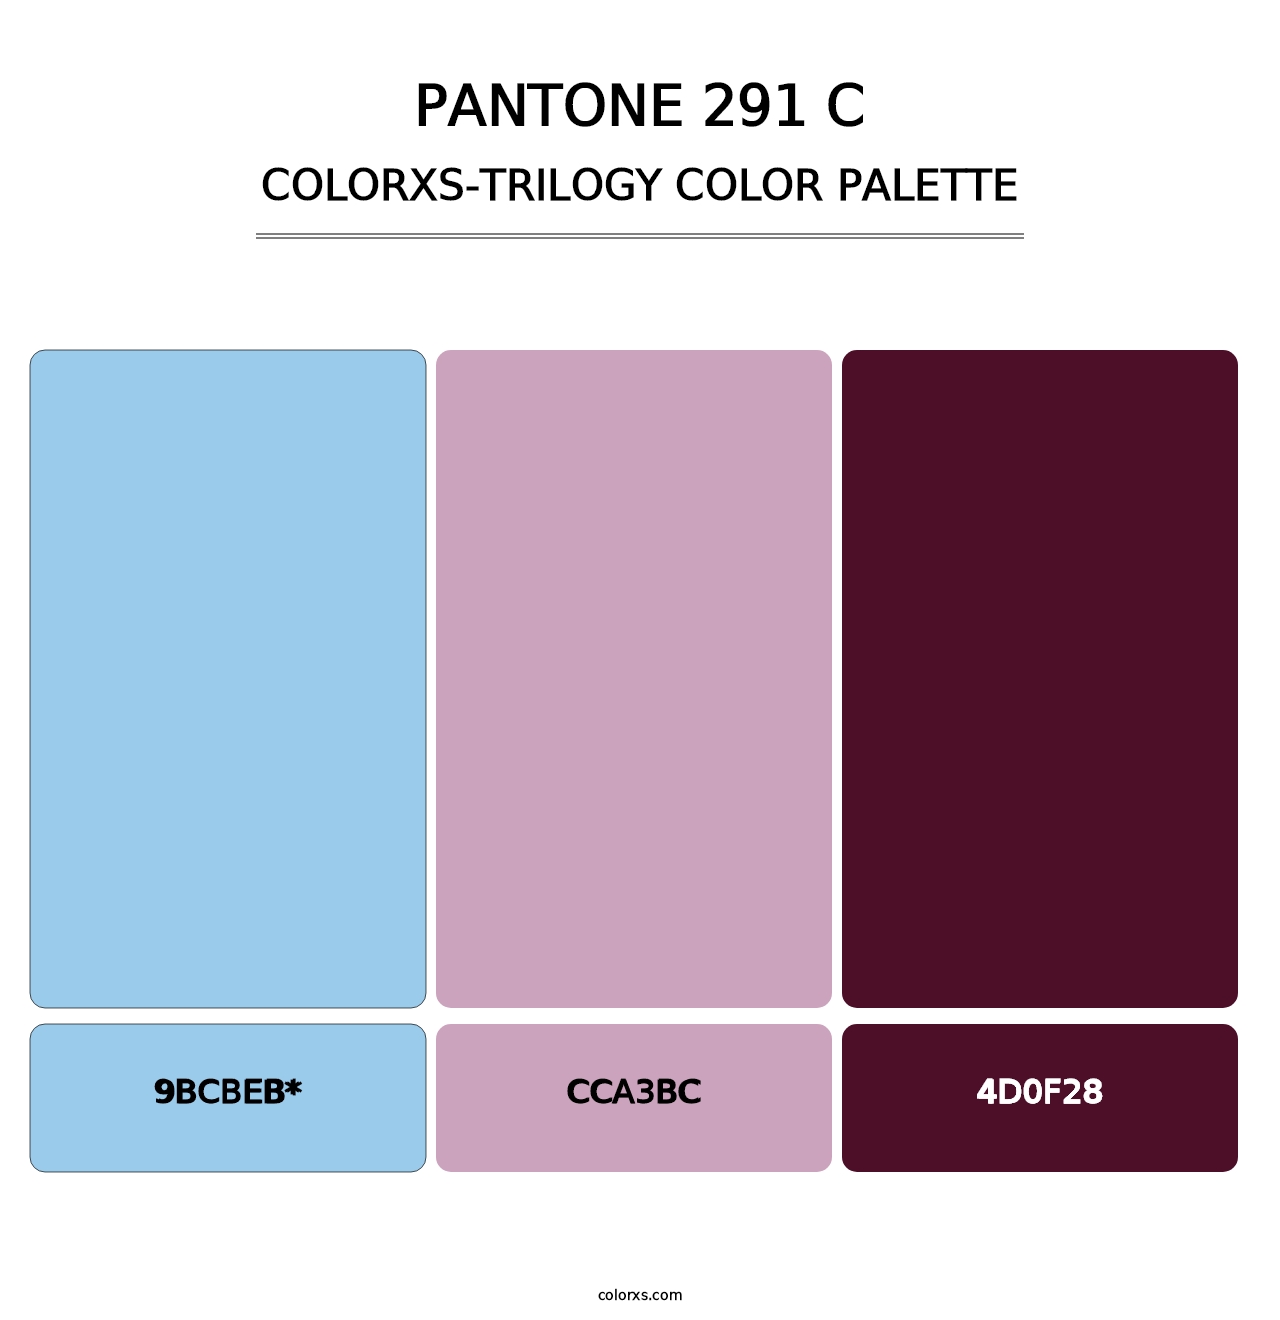 PANTONE 291 C - Colorxs Trilogy Palette